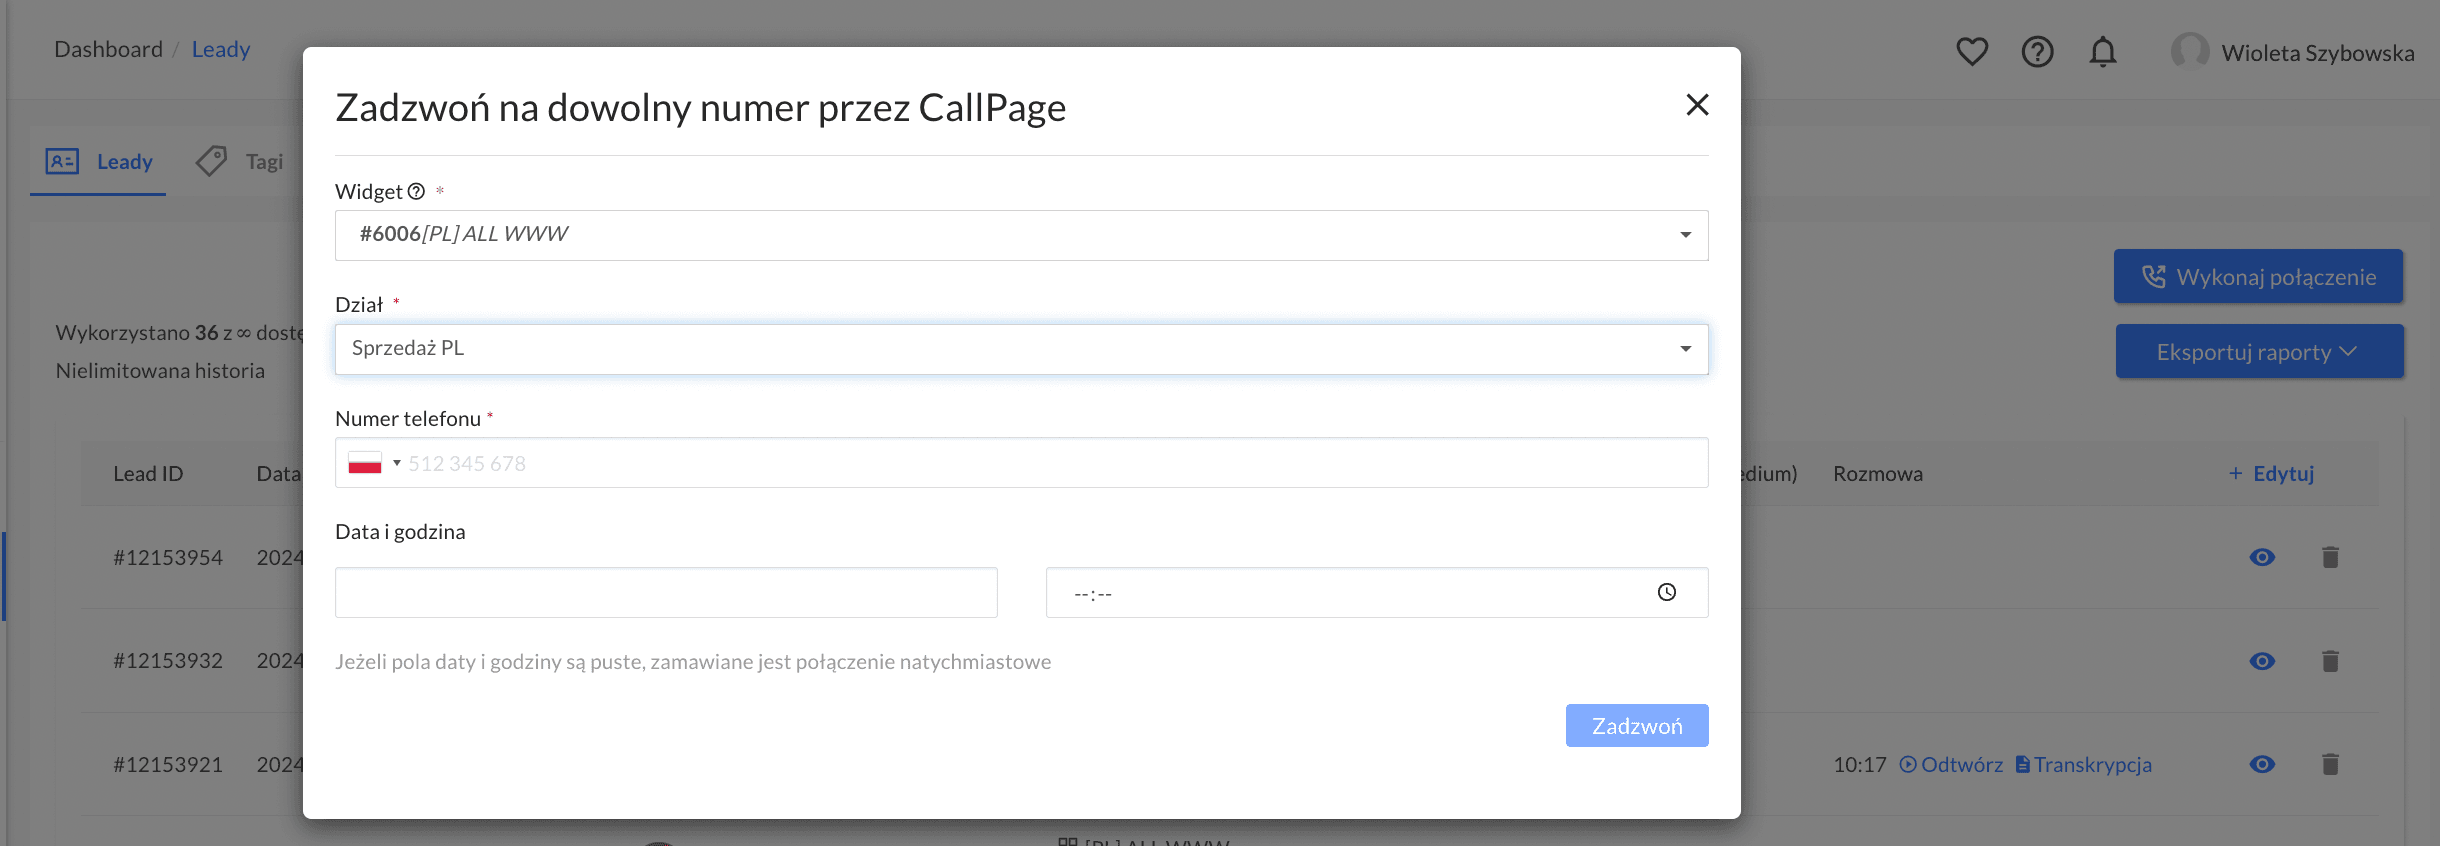 Połączenia wychodzące z CallPage